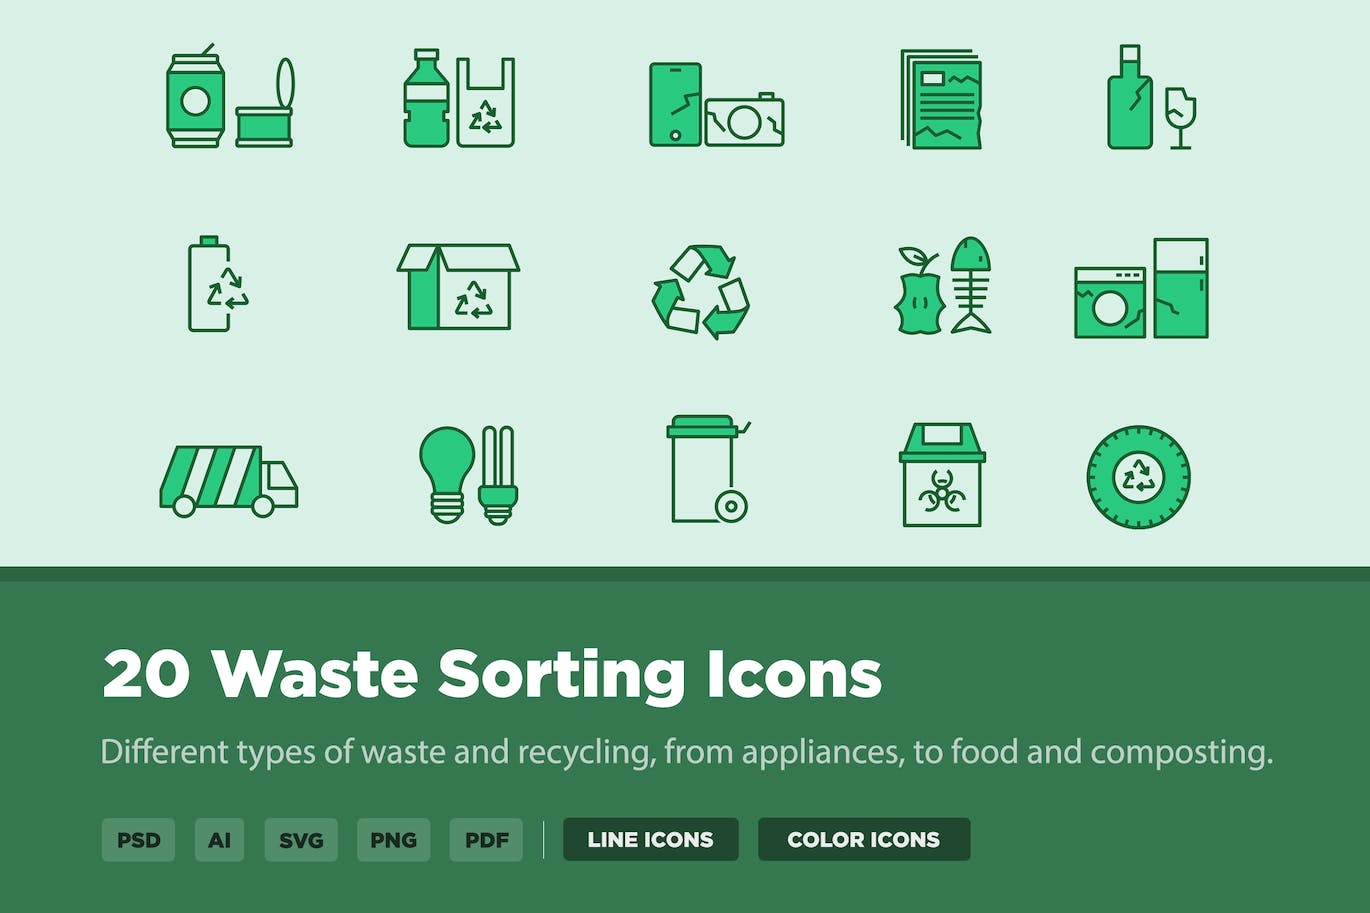 20个废物分类线条样式矢量图标 20 Waste Sorting Icons 图标素材 第1张